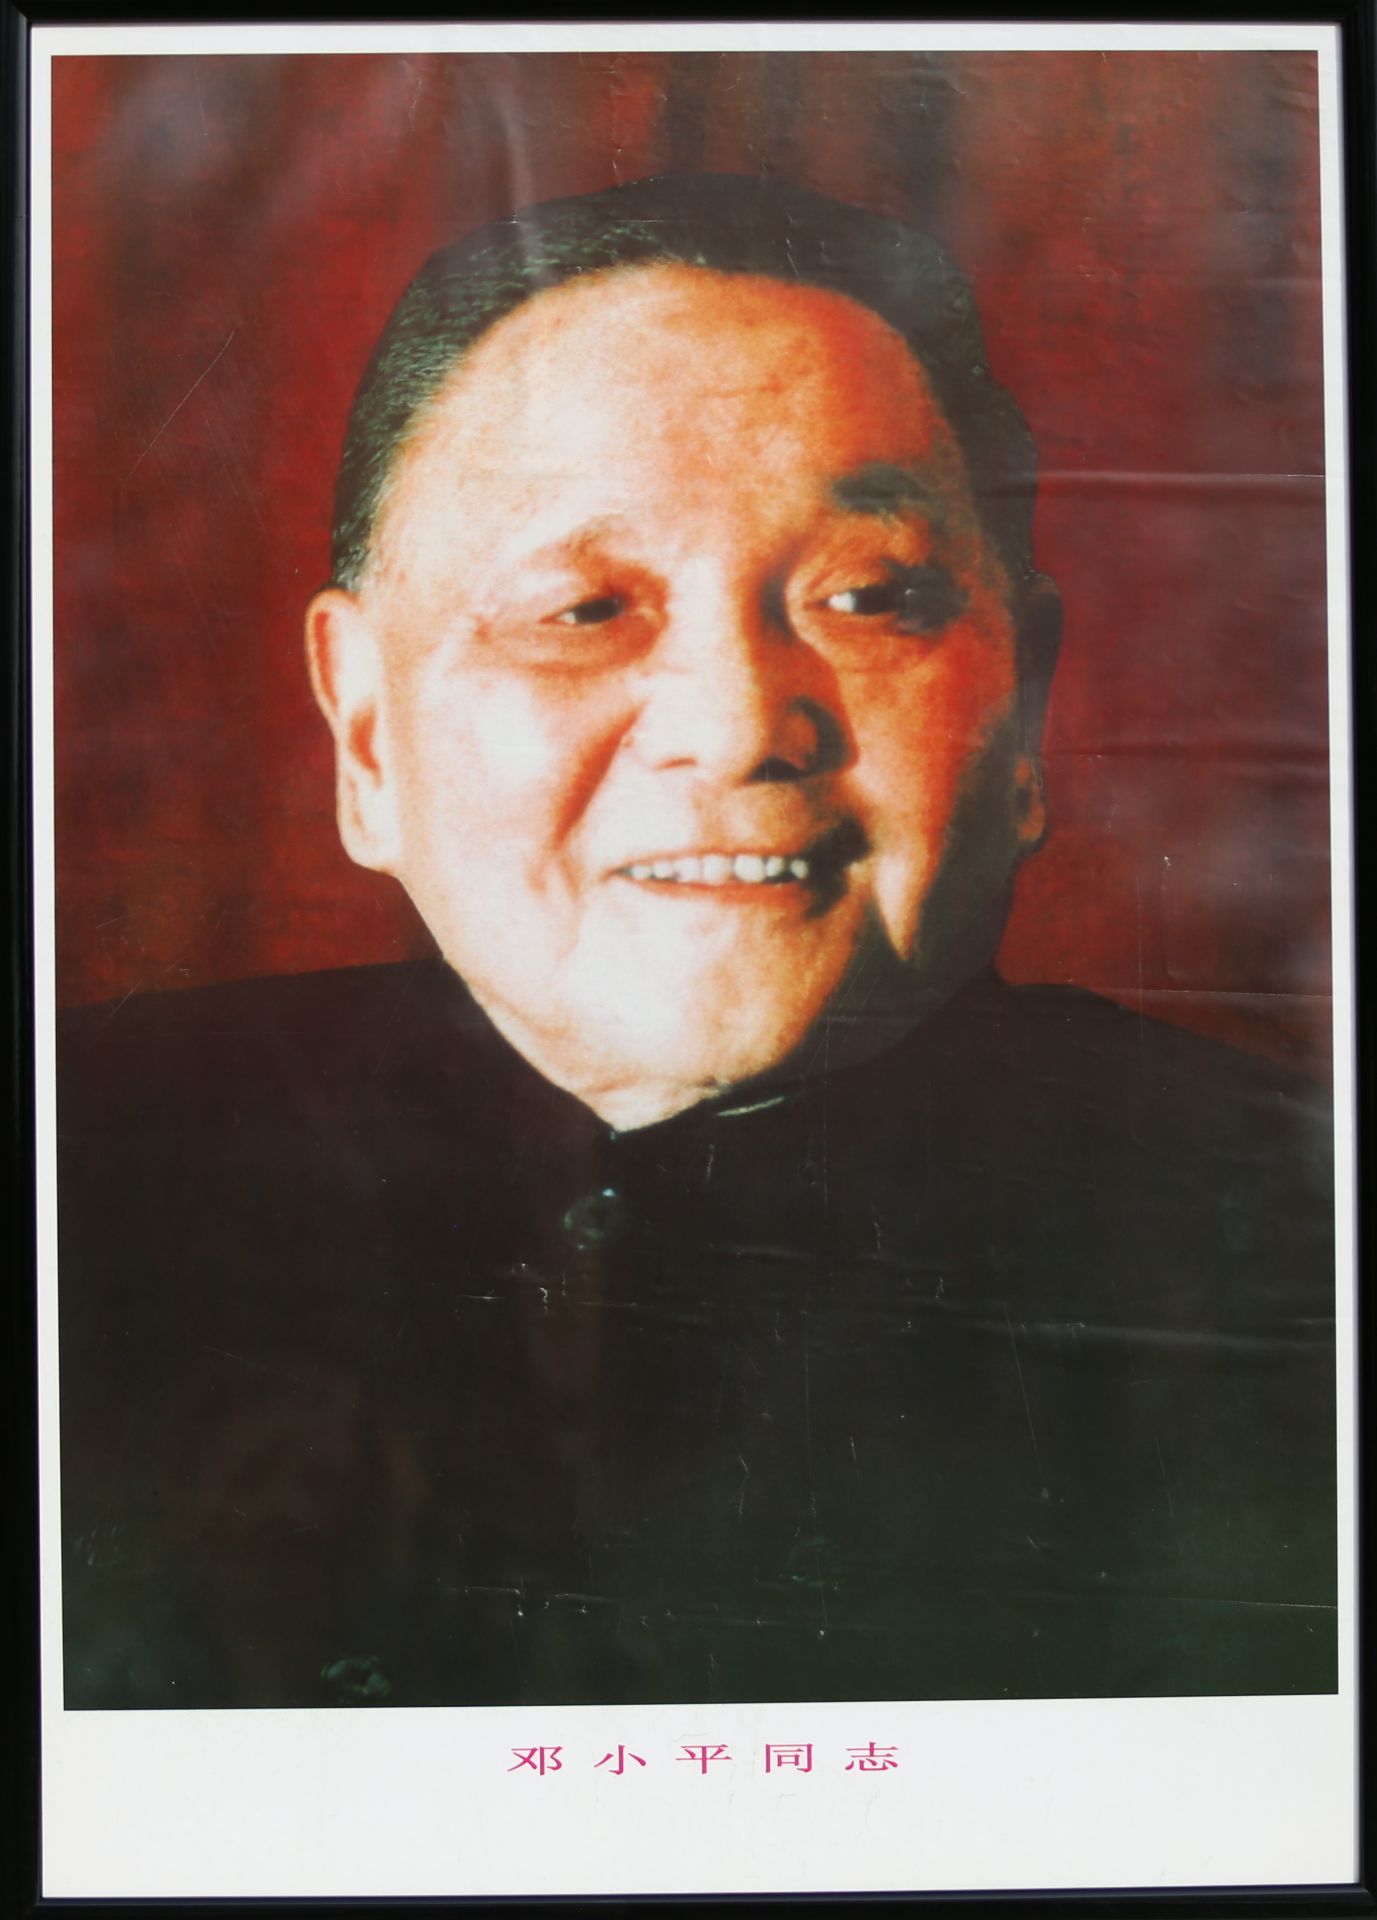 17 Affiches de propagande de la révolution culturelle chinoise Encadrée 75cm x 52cm - Image 8 of 17